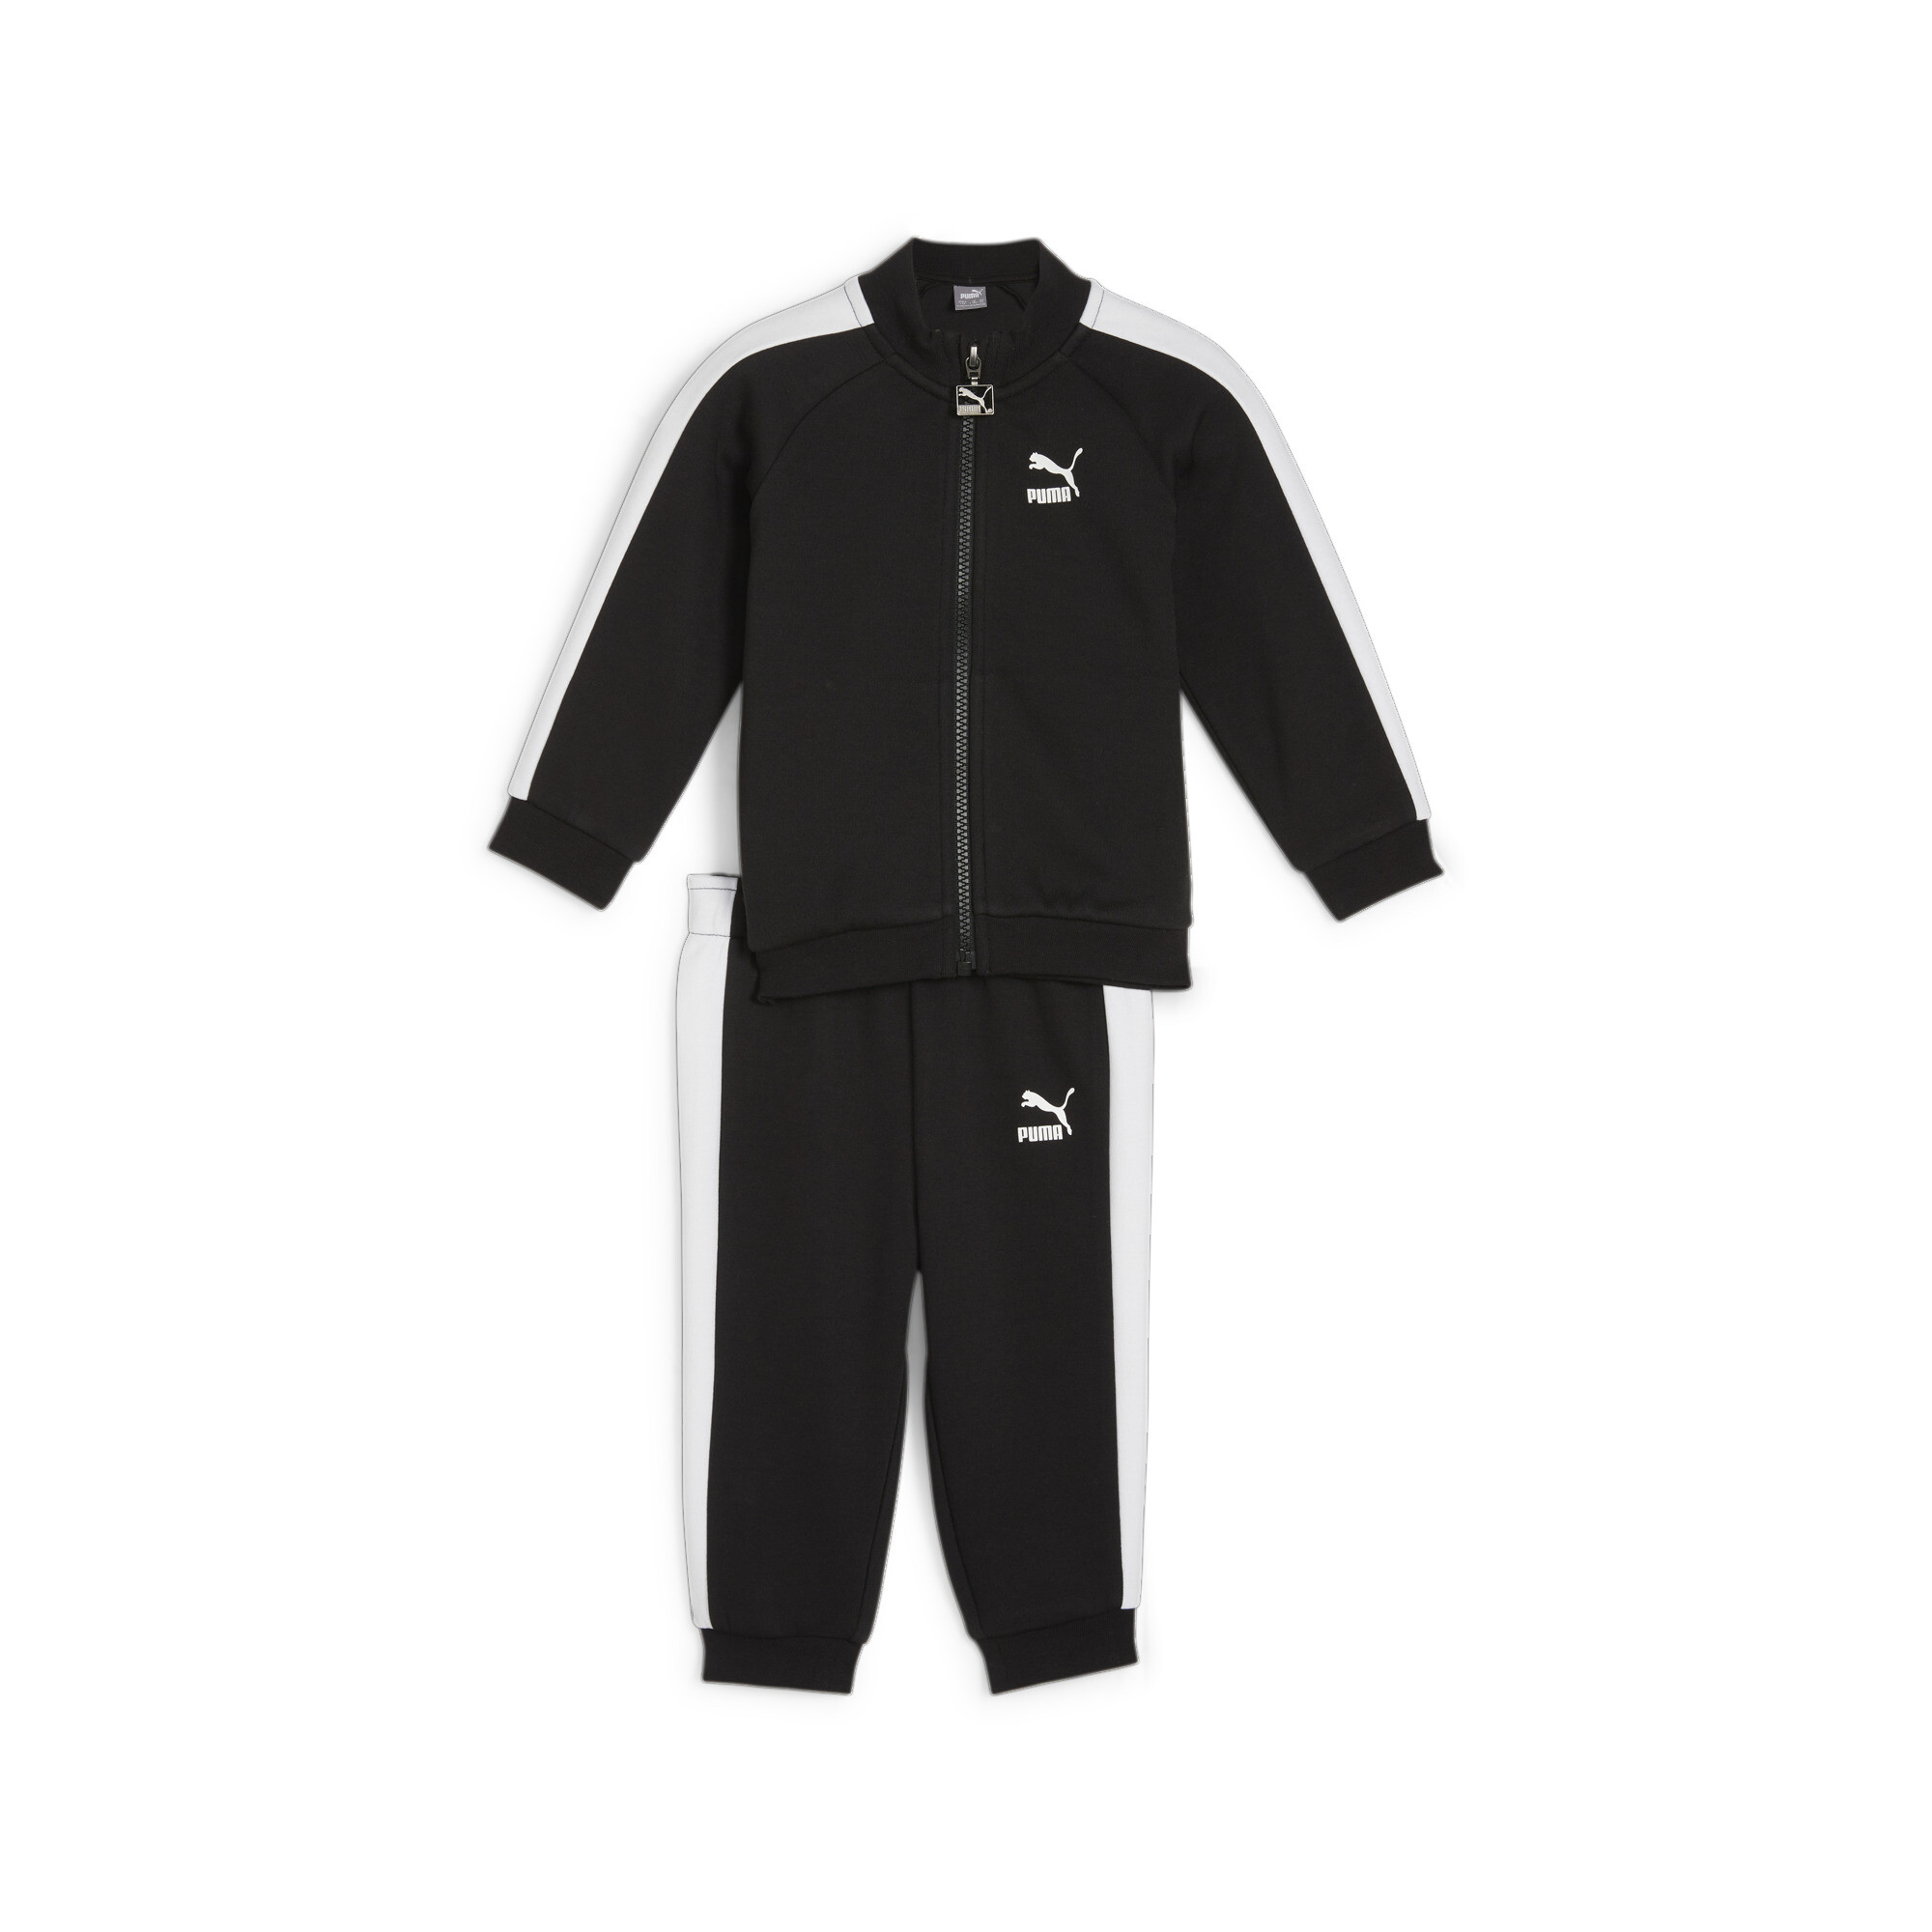 Puma MINICATS T7 ICONIC Baby Tracksuit Set, Black, Size 2-4M, Clothing